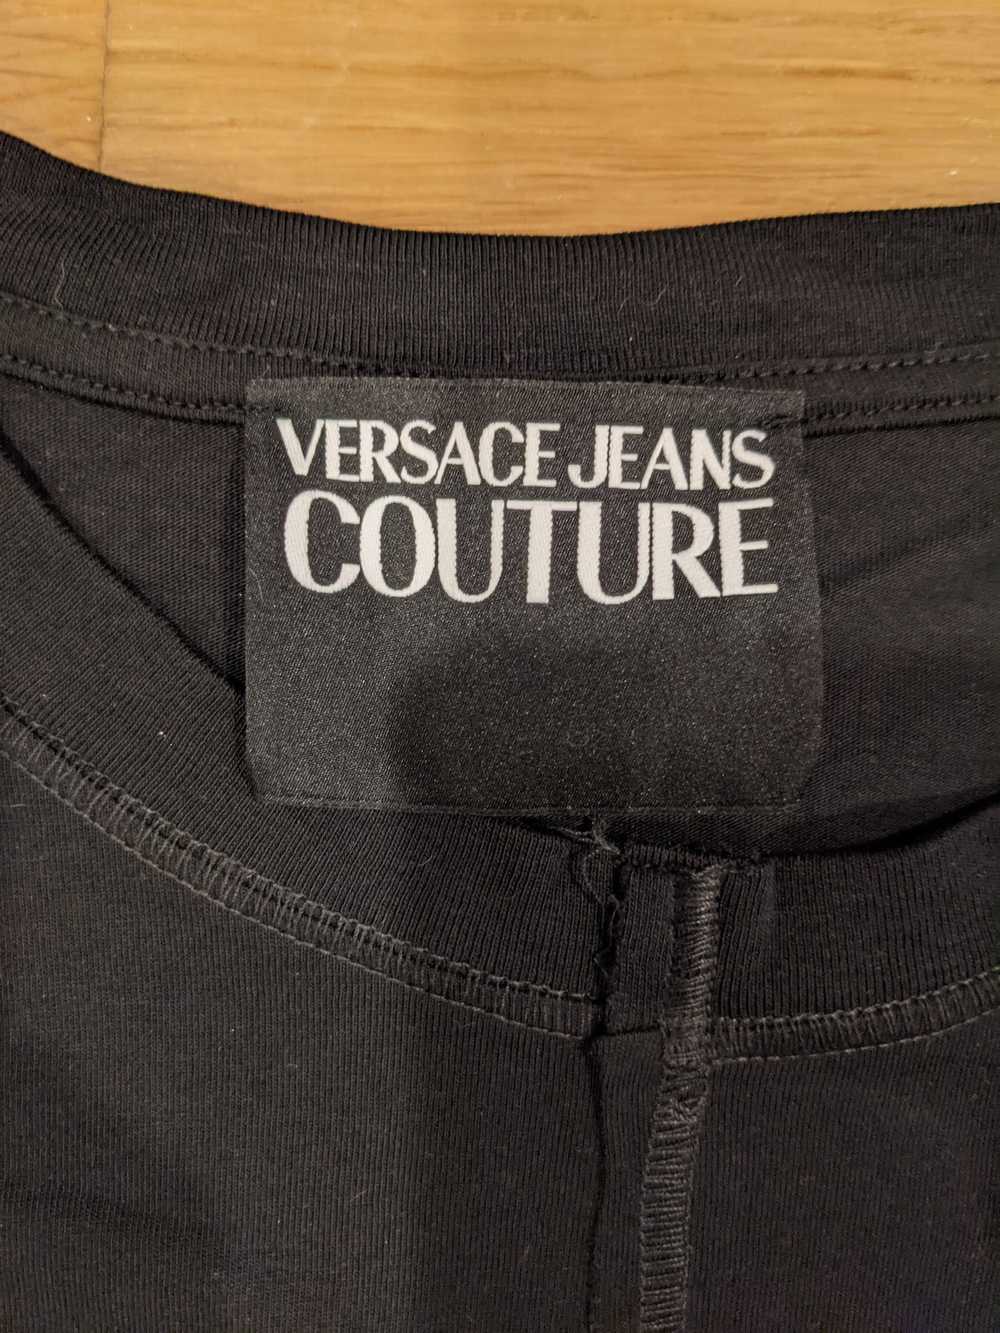 Versace Jeans Couture Versace Jeans Couture Mens … - image 6